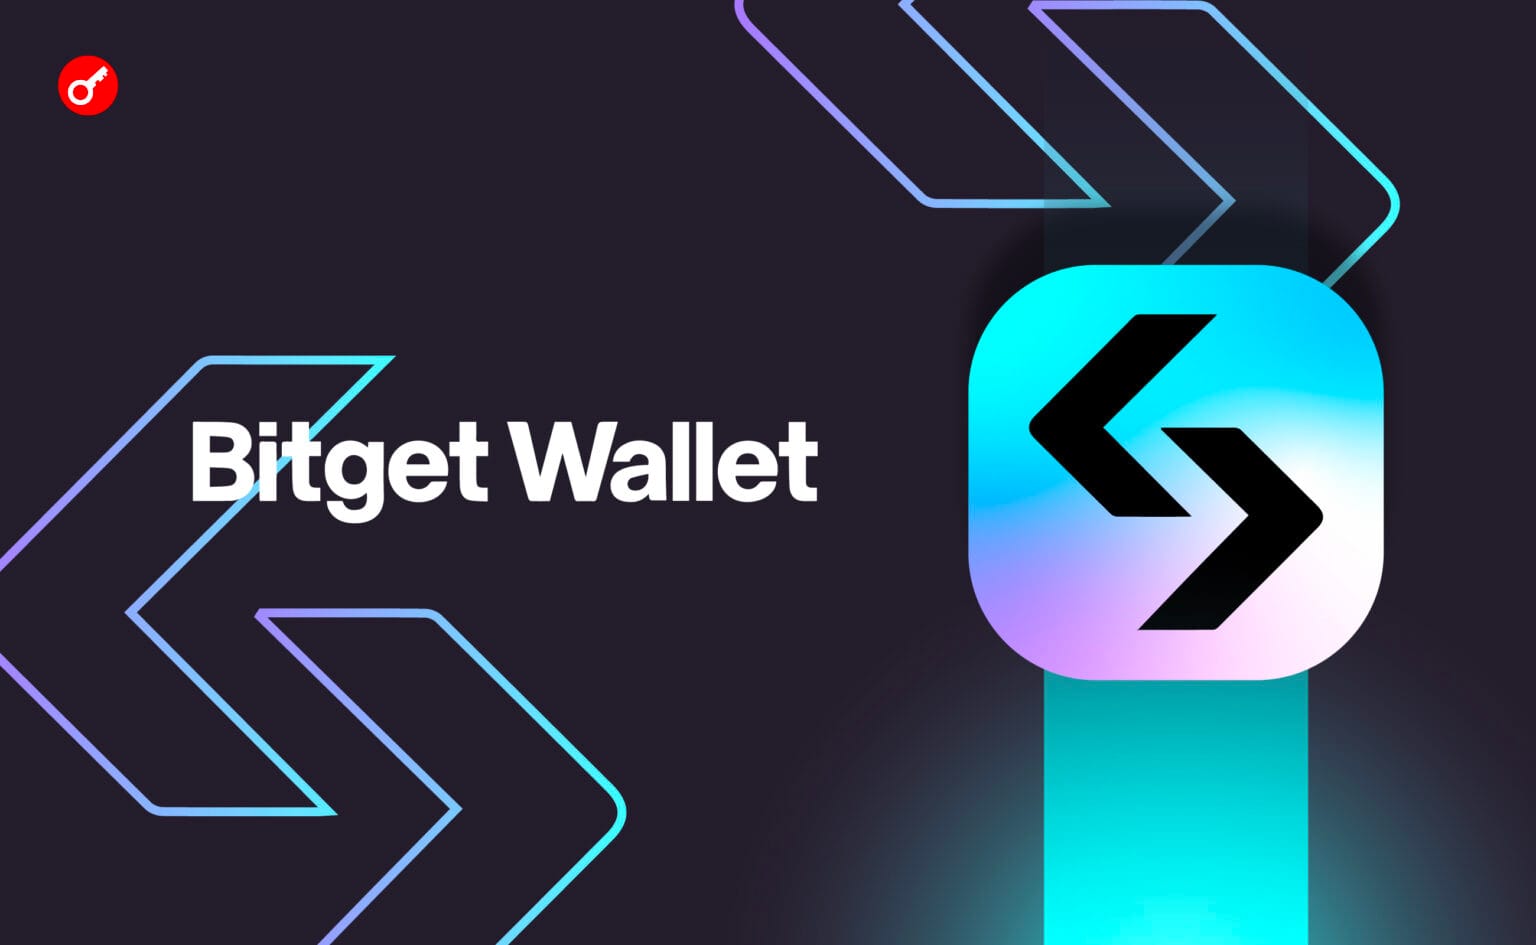 Количество пользователей Bitget Wallet превысило 20 млн